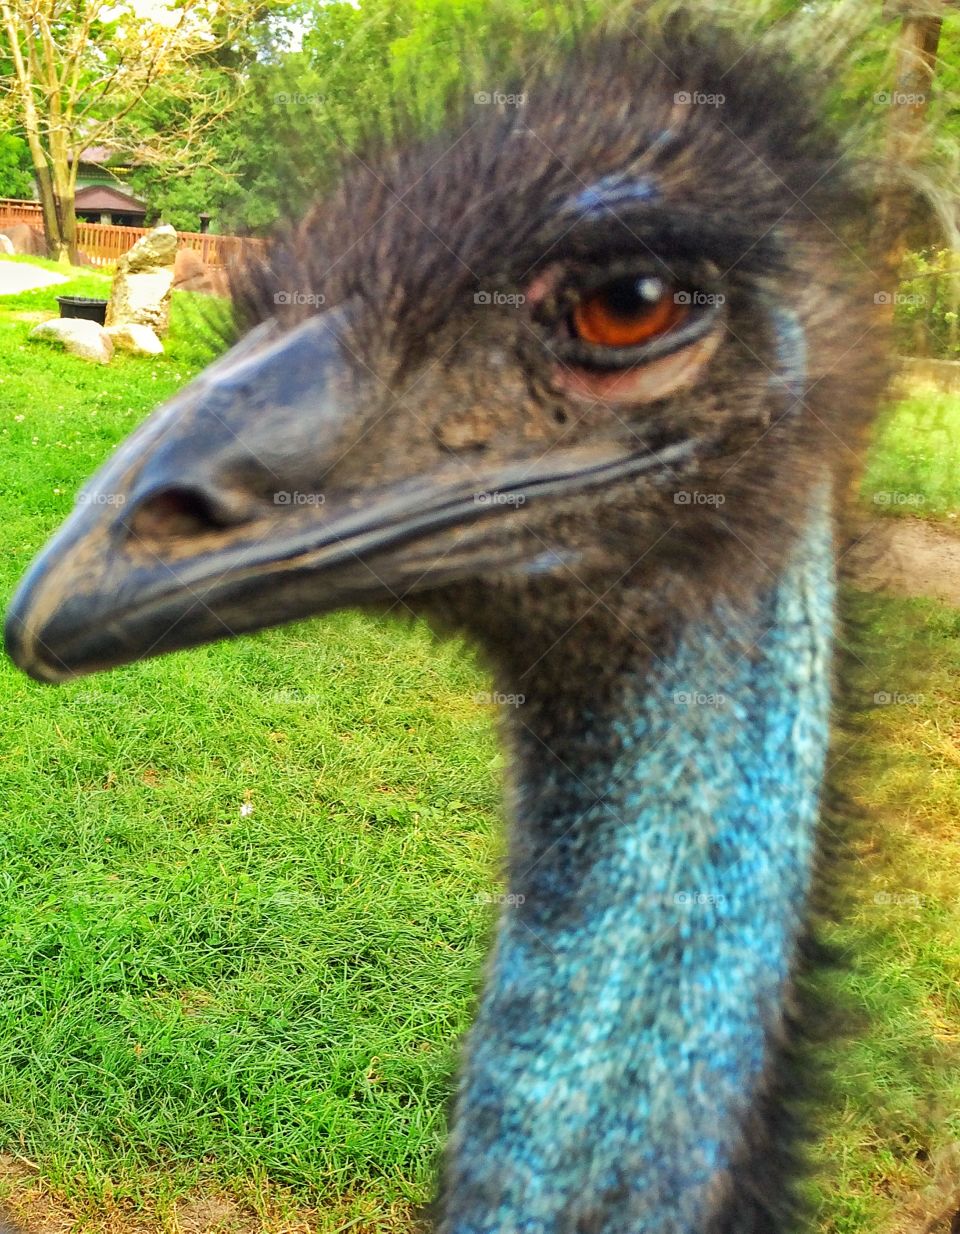 Emu at the zoo in Grand Rapids Michigan 